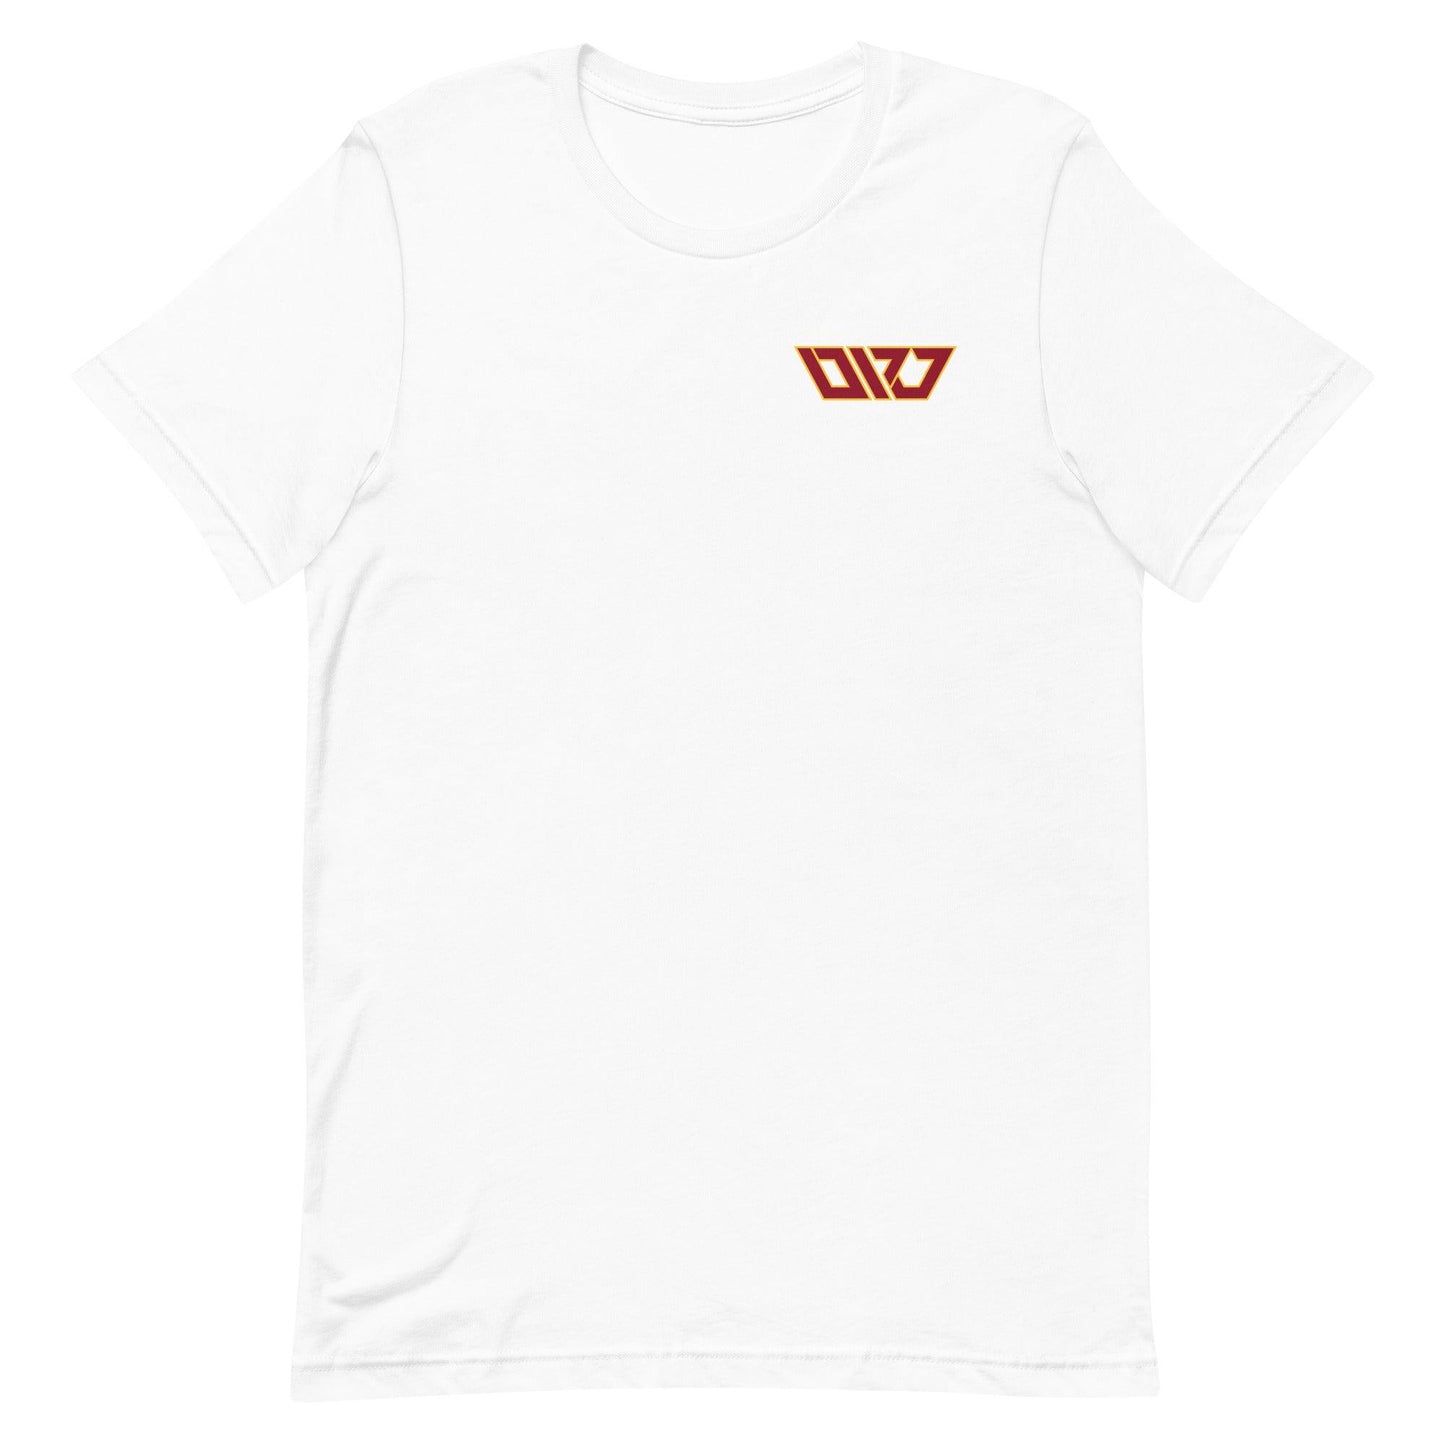 Darren Wilson Jr. "DWJ" t-shirt - Fan Arch